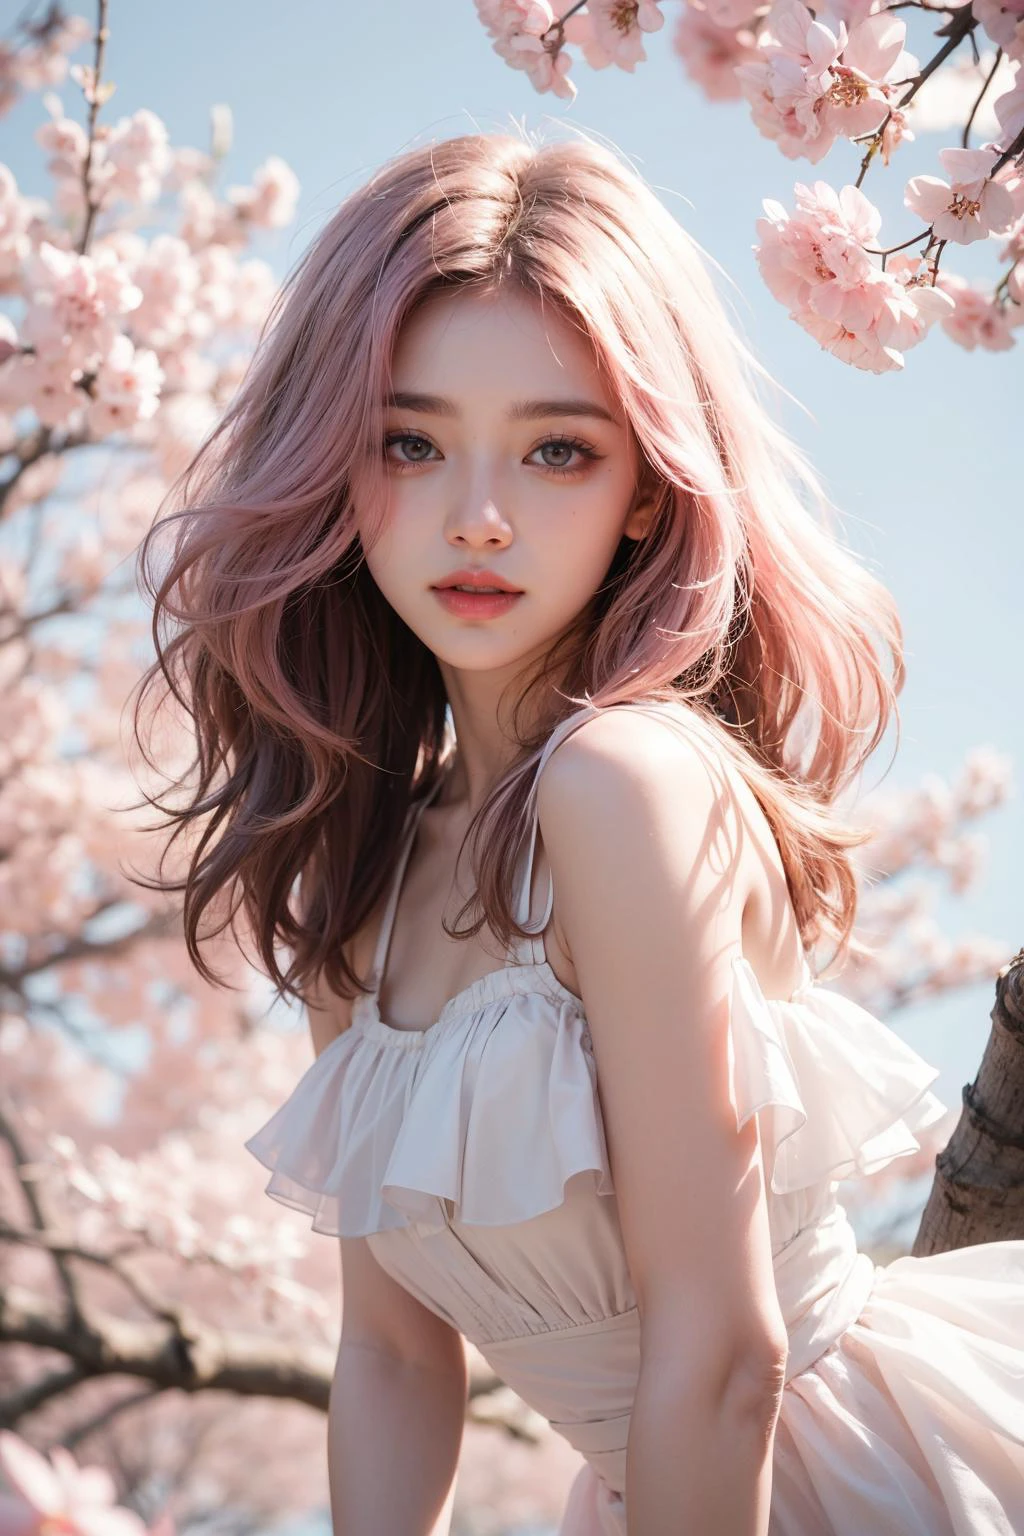 cabello rosa claro, ojos rosados, Rosa y blanco, hojas de sakura, colores vívidos, vestido blanco, Salpicaduras de pintura, fondo sencillo, trazado de rayos, Pelo ondulado